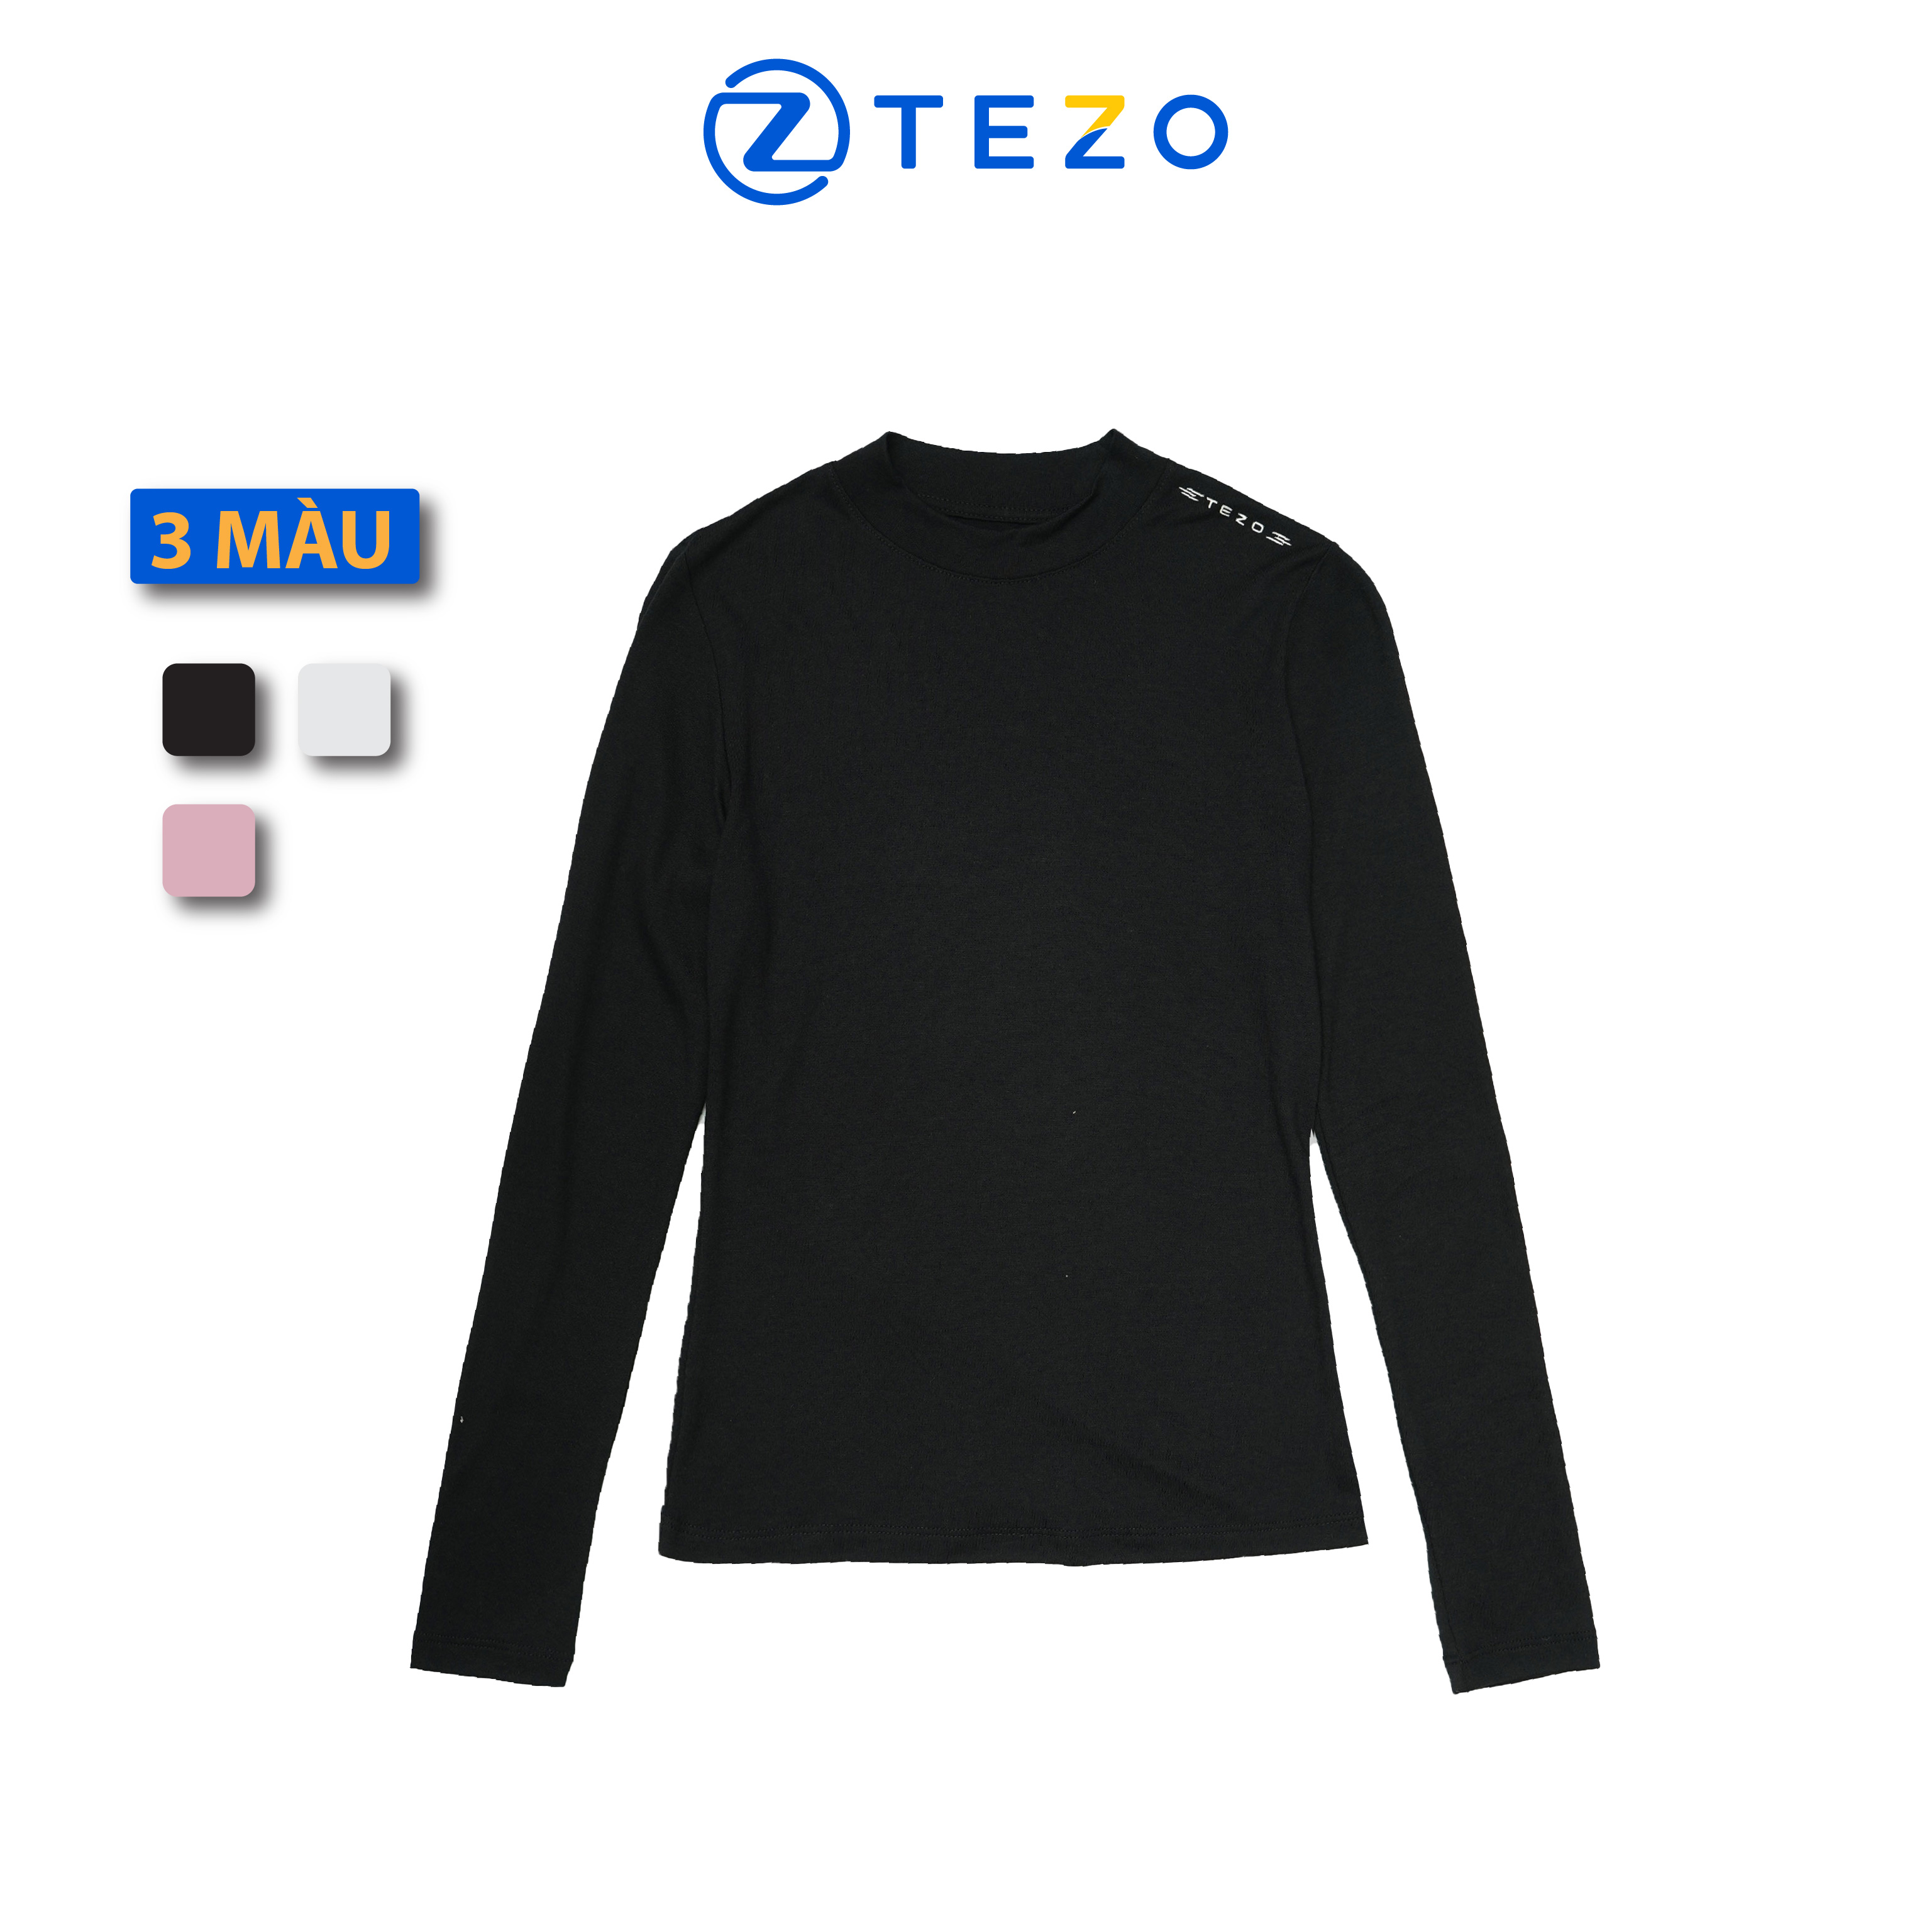 Áo giữ nhiệt nữ áo thun nữ cổ 3 phân thiết kế thêu vai Tezo 22AT3T005